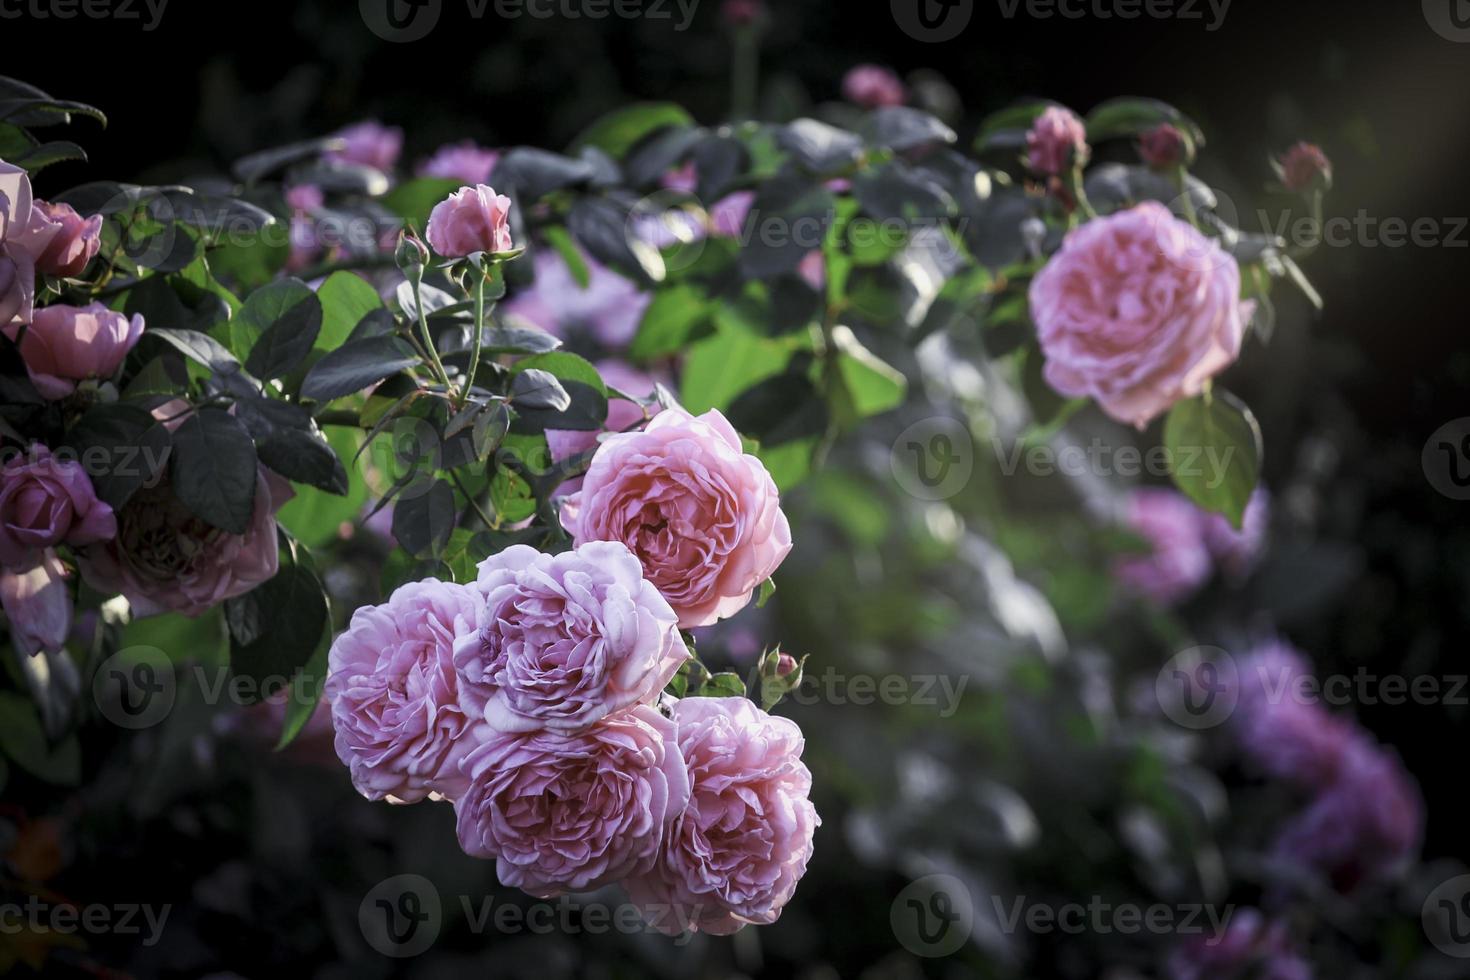 rosas inglesas cor de rosa florescendo no jardim de verão, uma das flores mais perfumadas, flor mais cheirosa, bonita e romântica foto